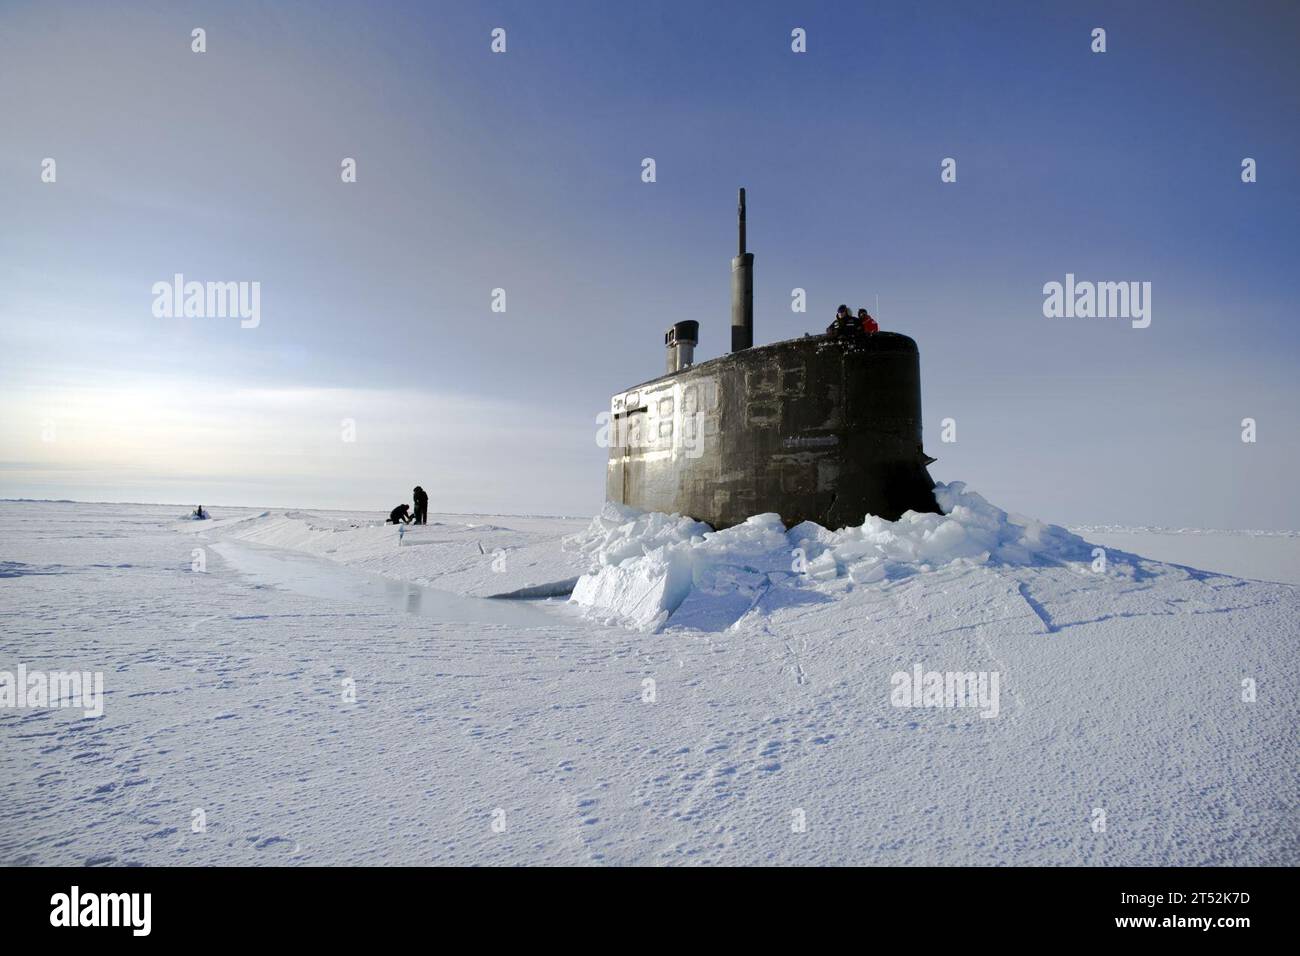 110319UH963-293 ARCTIC OCEAN (19 mars 2011) des marins et des membres de la station de glace du Laboratoire de physique appliquée dégagent la glace de l'écoutille du sous-marin de classe Seawolf USS Connecticut (SSN 22) qui fait surface au-dessus de la glace pendant l'ICEX 2011. Marine Banque D'Images